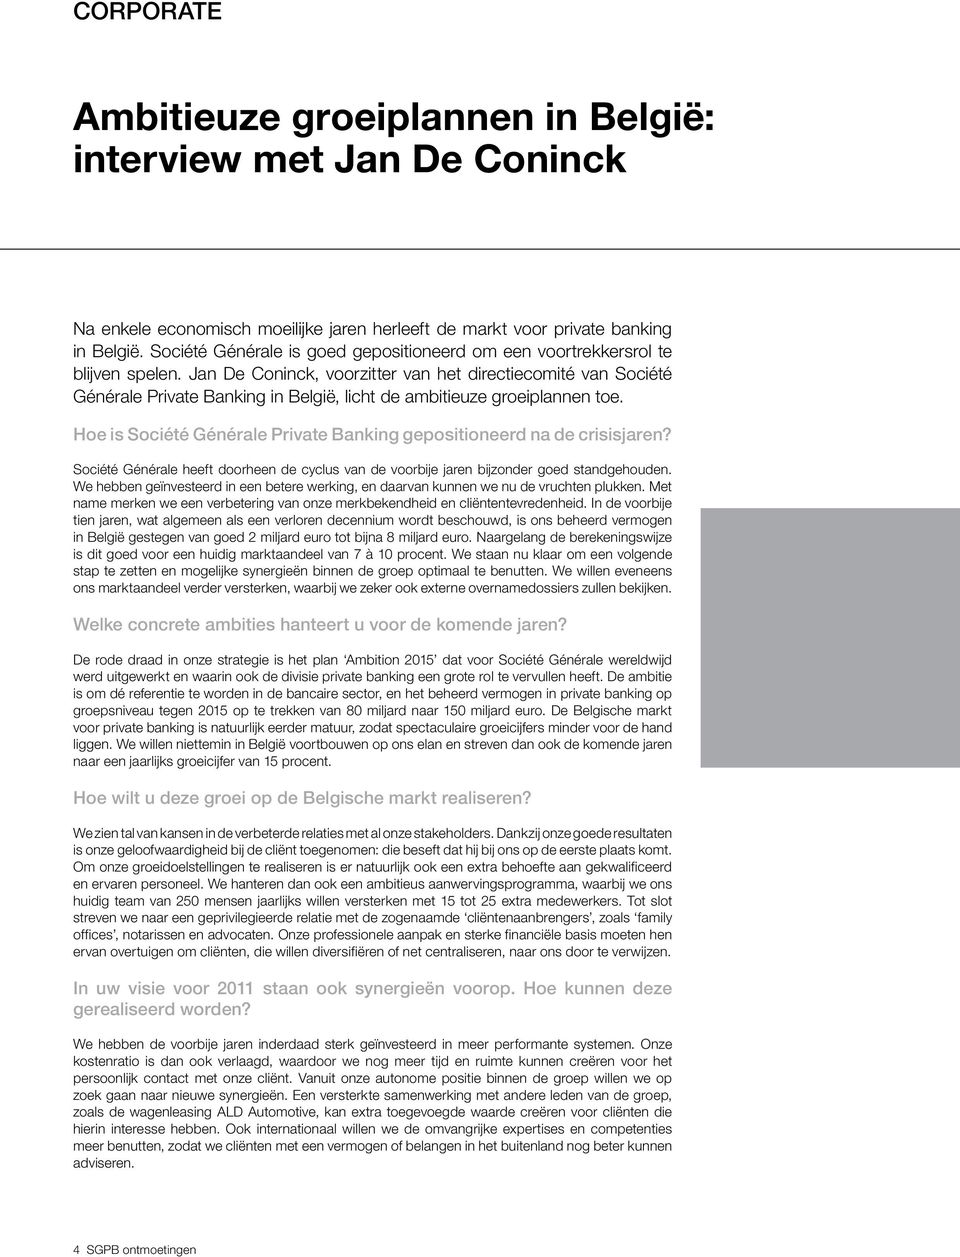 Jan De Coninck, voorzitter van het directiecomité van Société Générale Private Banking in België, licht de ambitieuze groeiplannen toe.